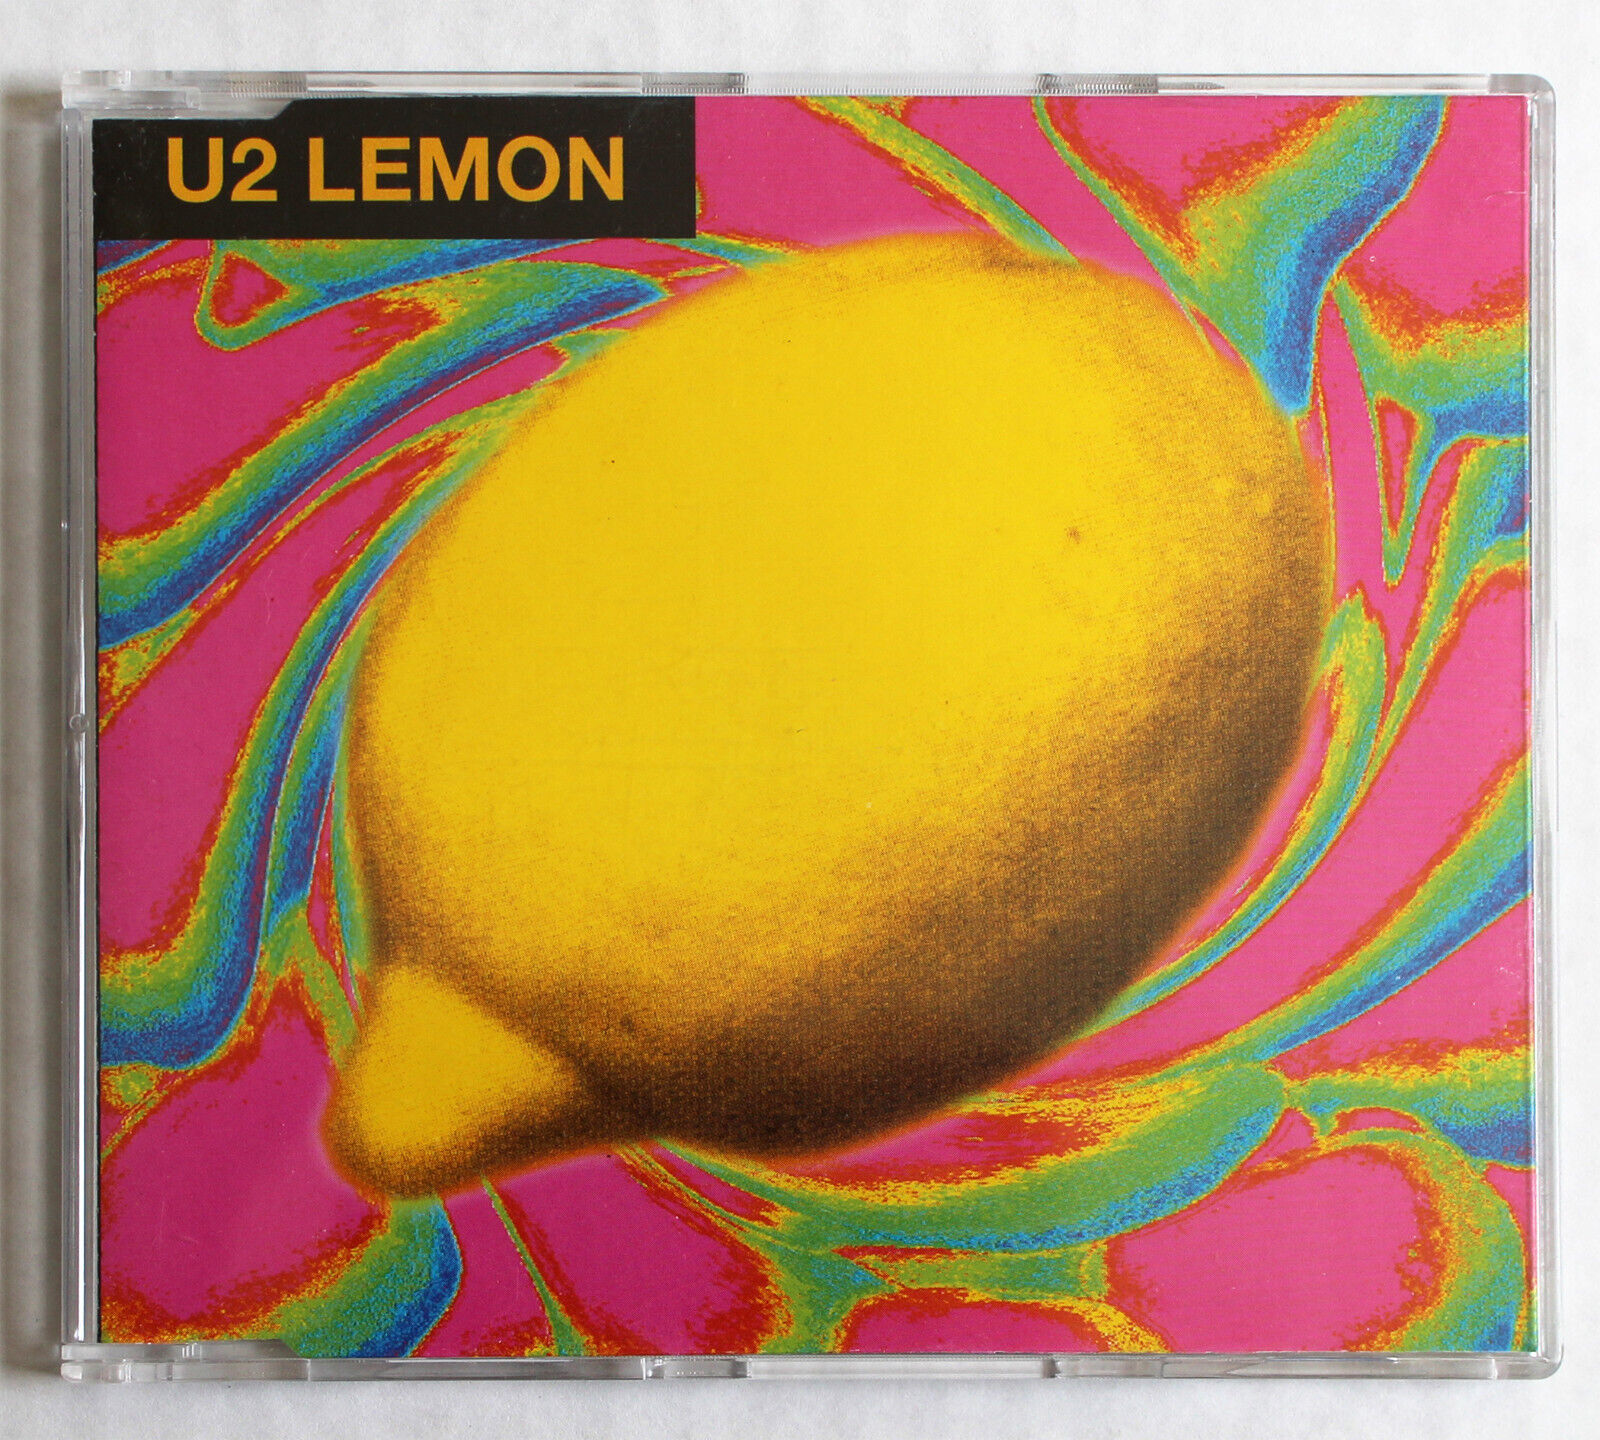 U2 Lemon (Edit) CD Rare 1993 1-Track PROMO Single UK Press LEMCD1 The Edge BONO